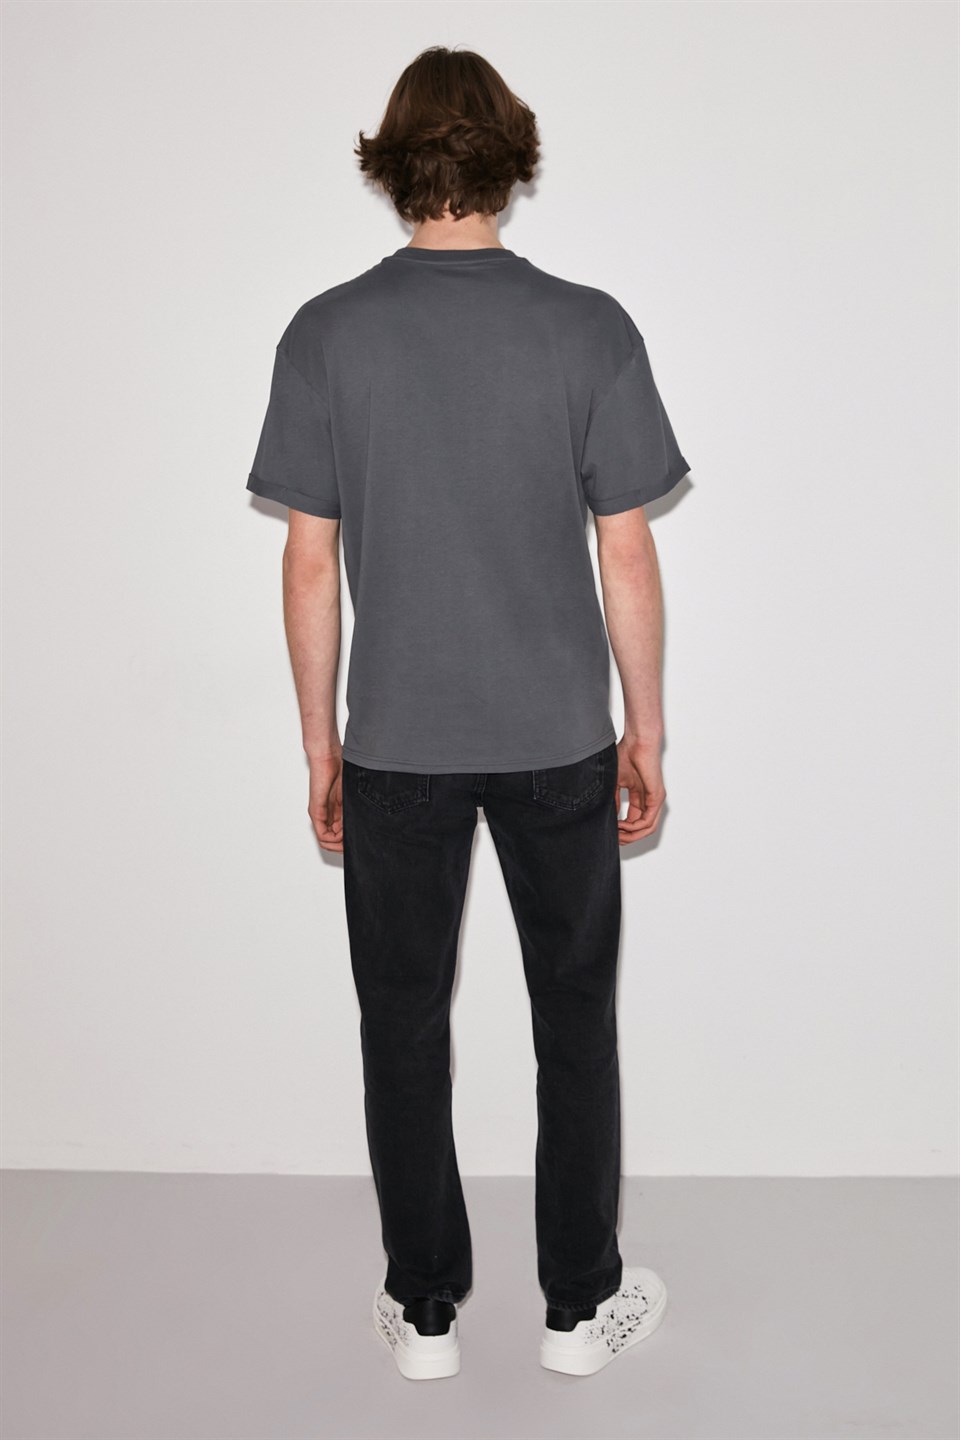 COLOMBUS Erkek Gri Yırtmaçlı ve baskılı Yuvarlak Yaka Comfort Fit T-Shirt